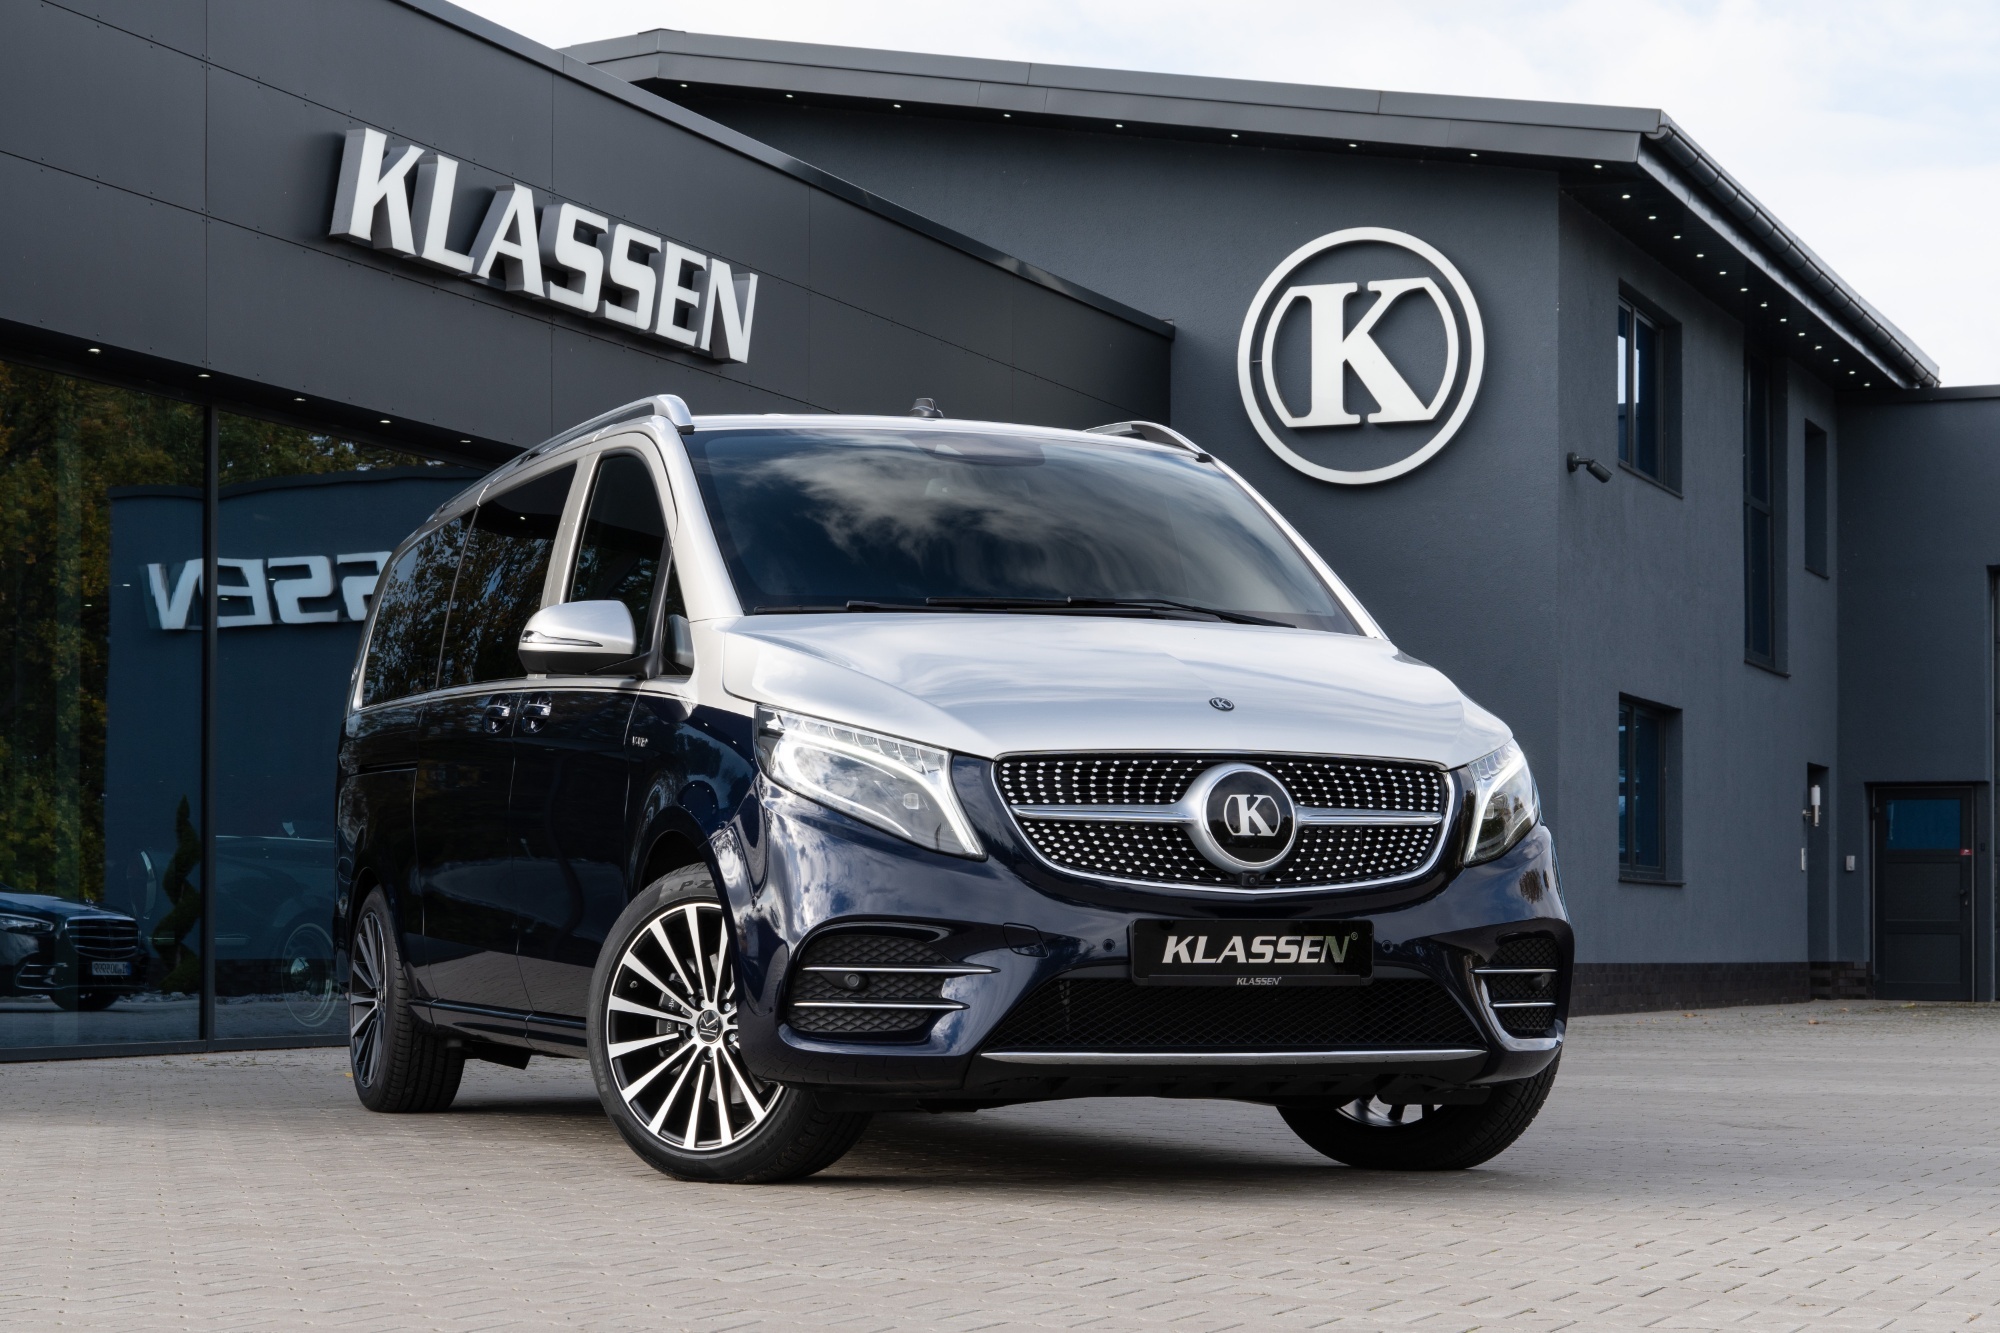 arm Opsommen zwemmen MVV_1444 ▻ V-Class V300 AMG Limited Luxury VIP Van for sale - German  Manufacture and Design - KLASSEN